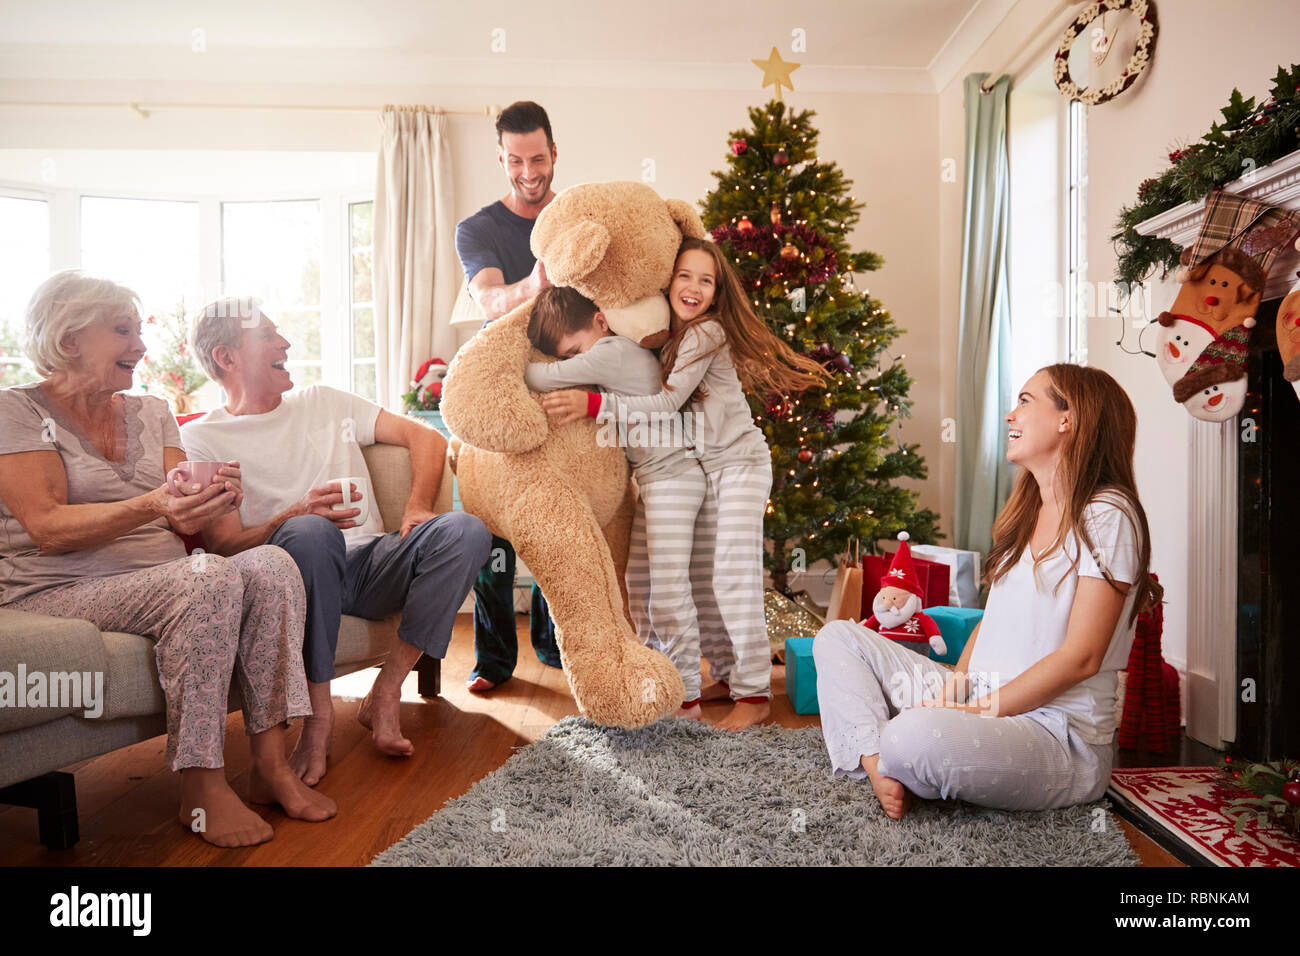 Kinder spielen mit riesigen Teddybär als Multi-Generation Familie Geschenke an Weihnachten Stockfoto